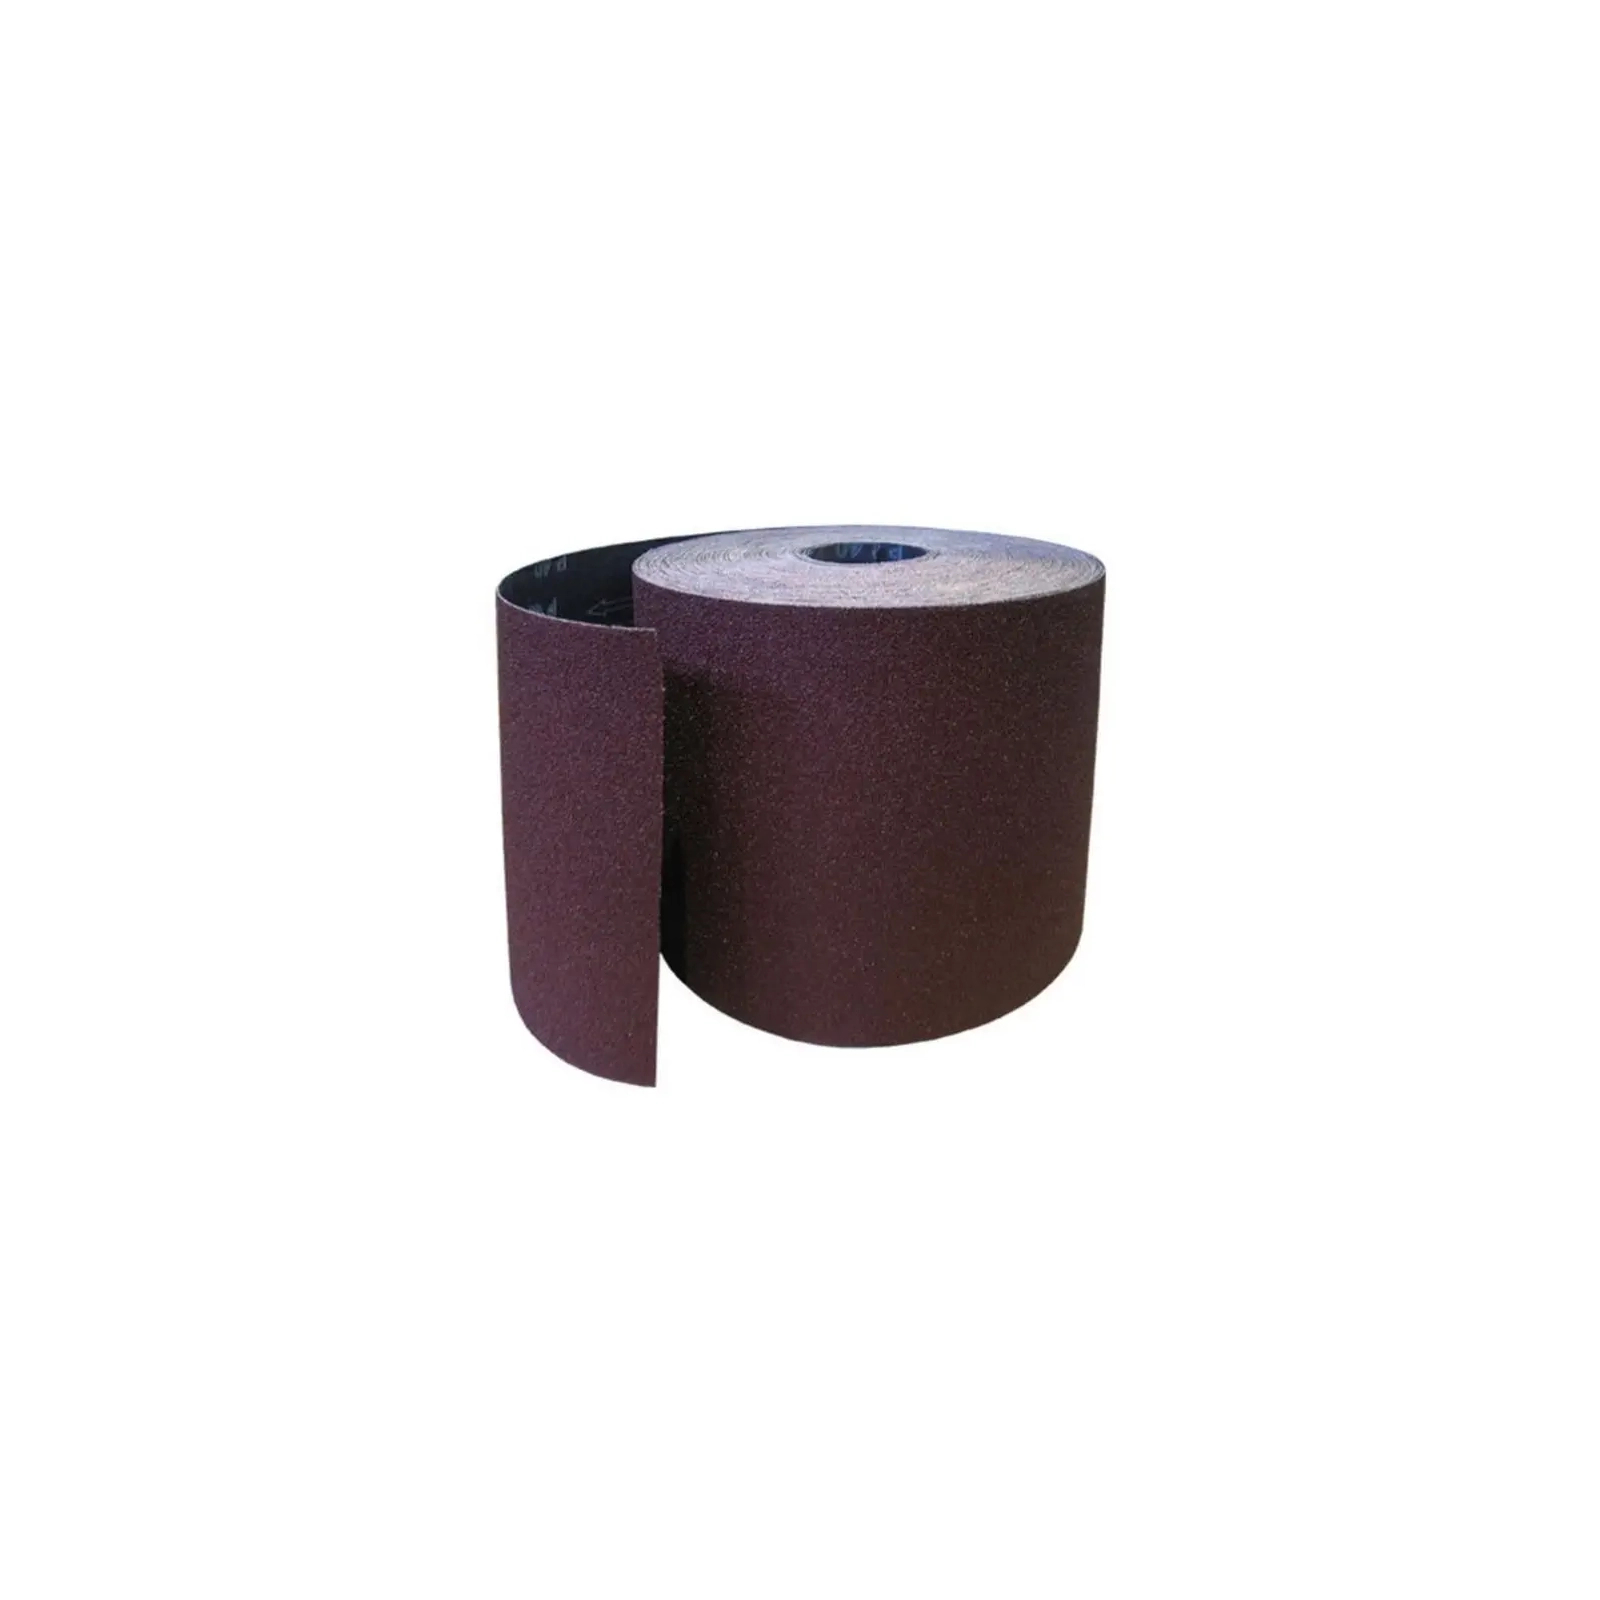 Наждачная бумага HAISSER бумажная основа – 115мм x 5м, зерно 60 (118541)